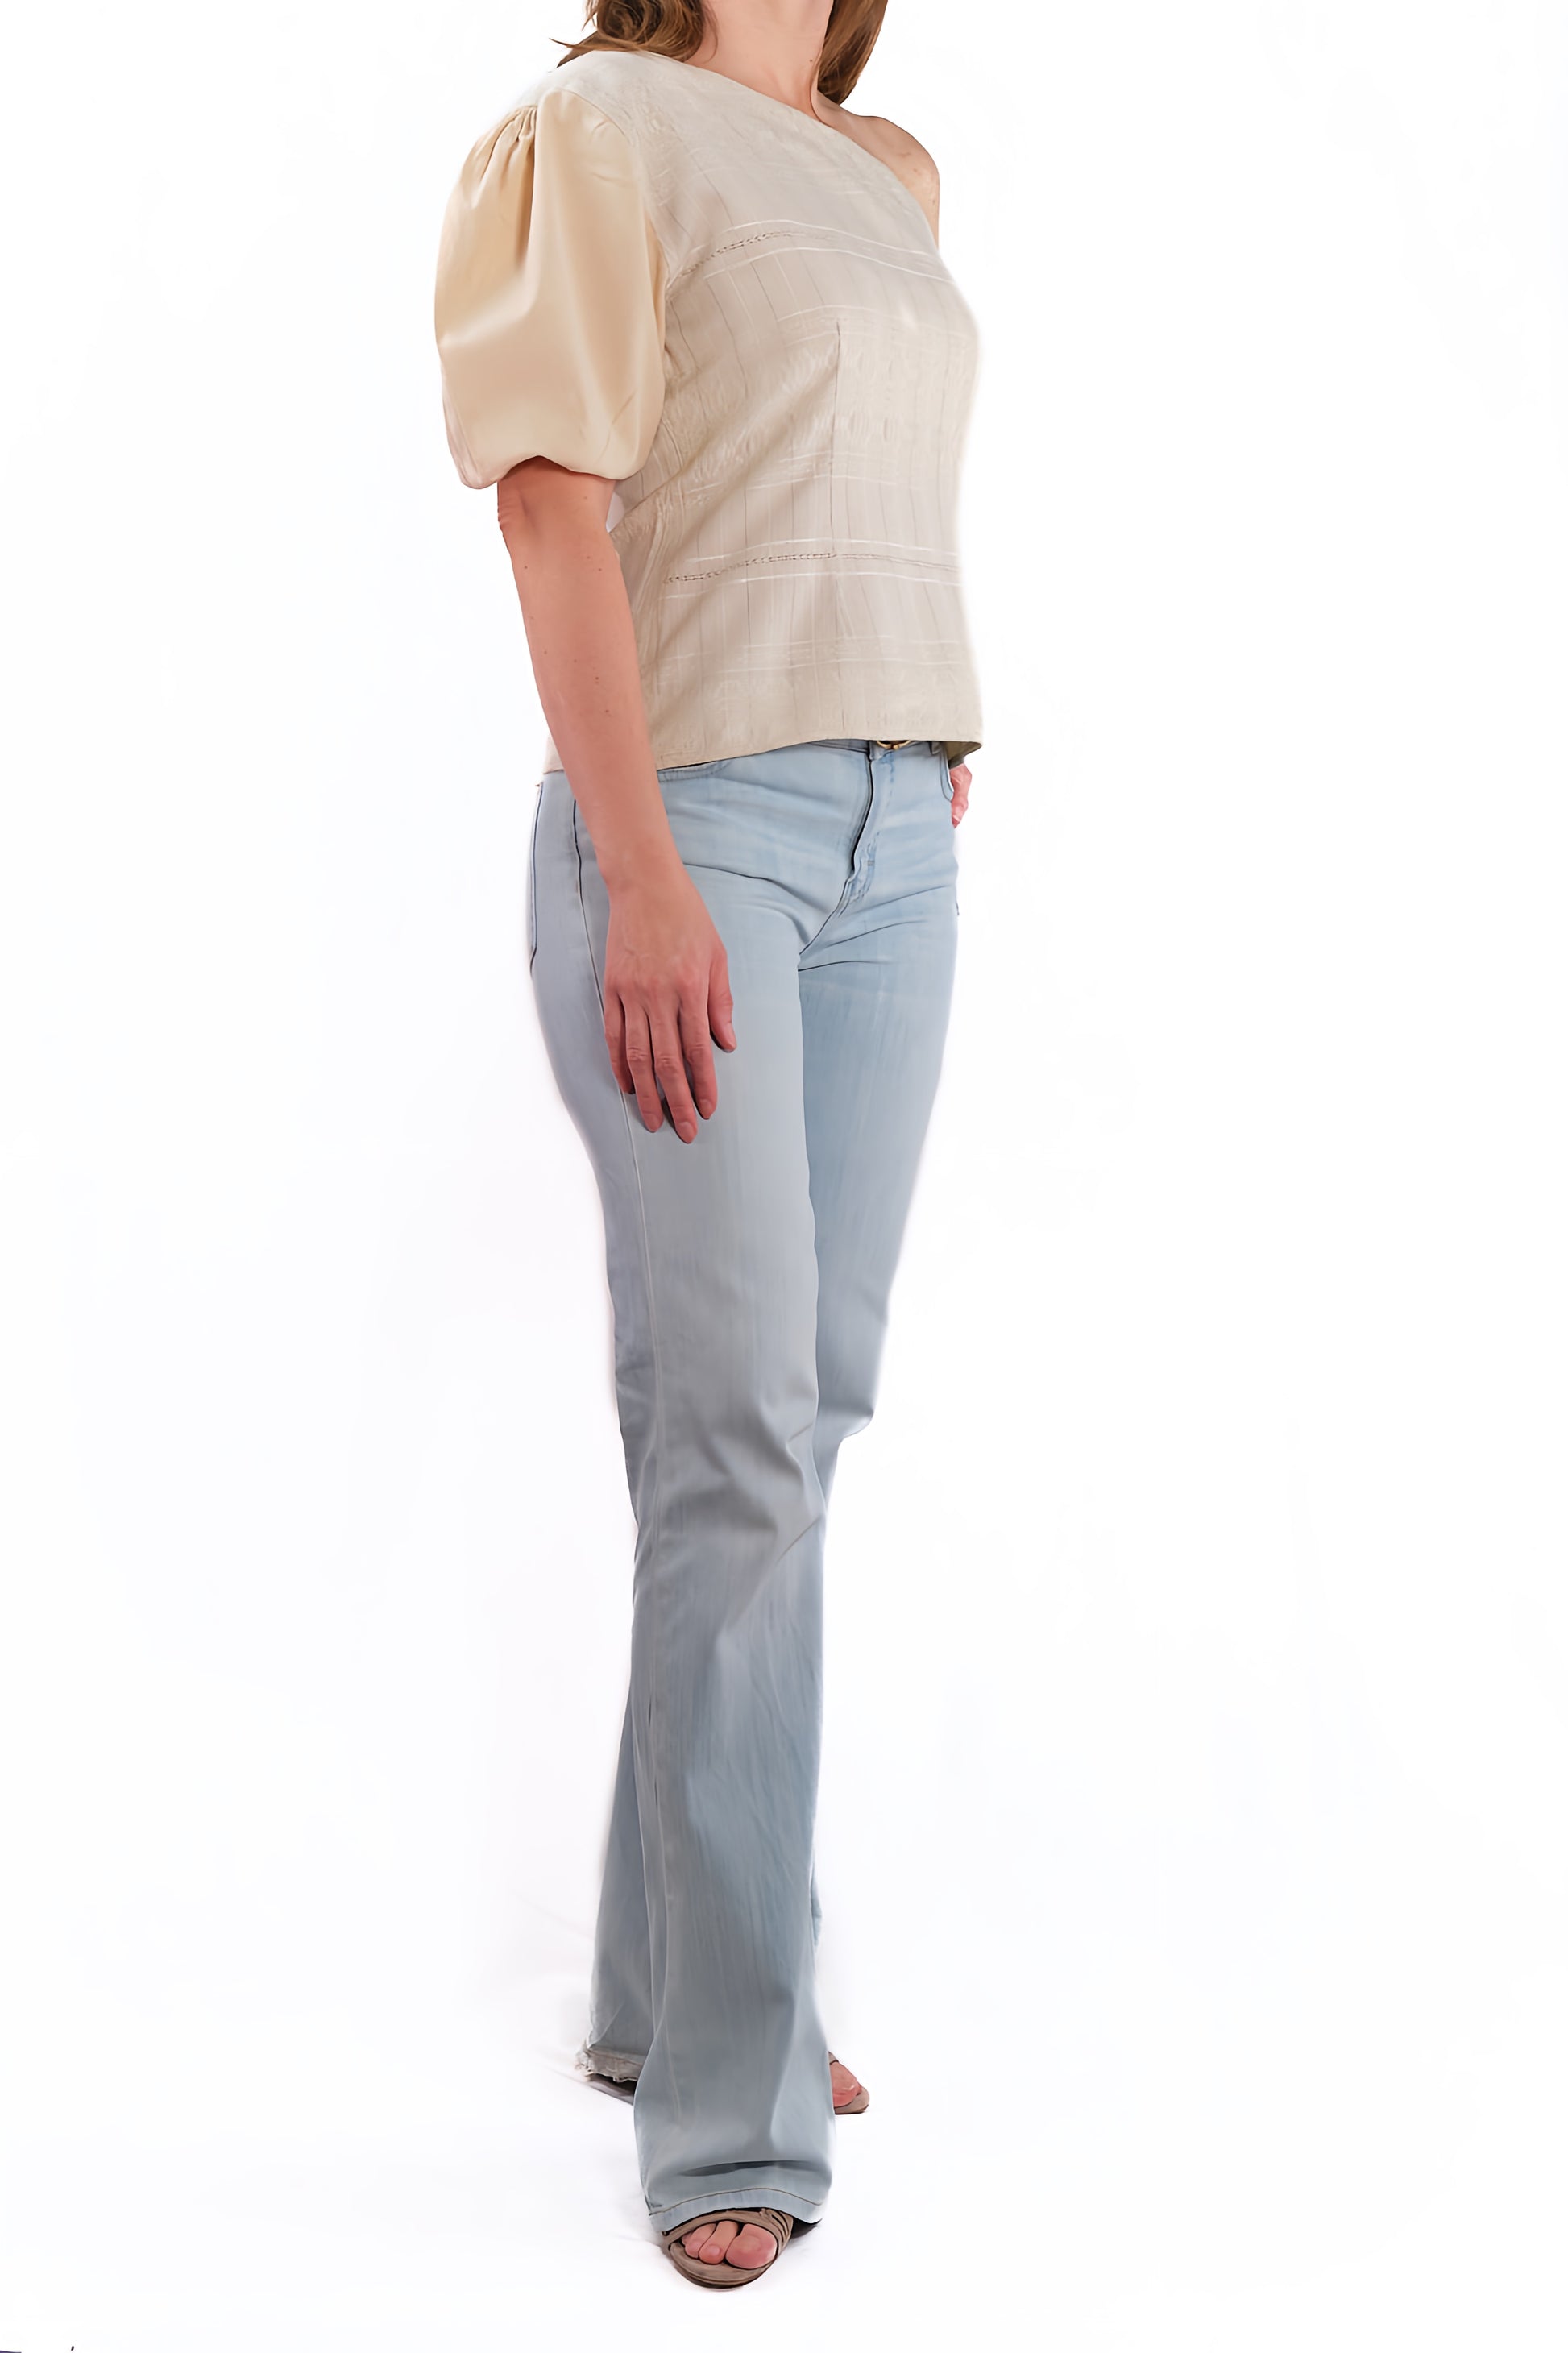 Mitla blouse ecru with bare shoulder side